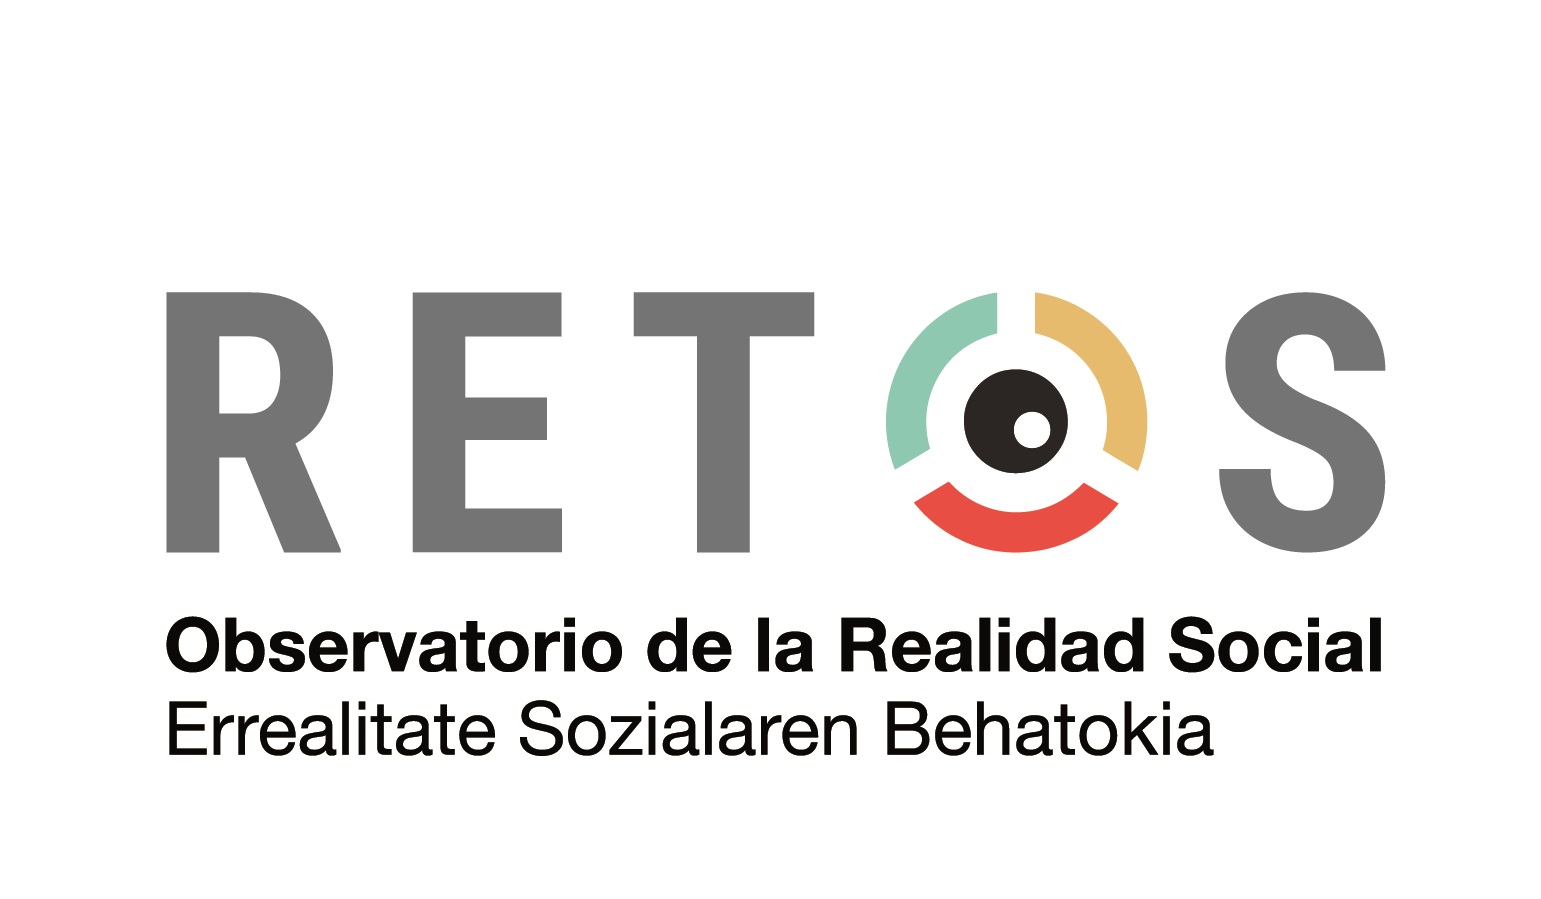 Logotipo del proyecto Retos, del Observatorio de la Realidad Social.